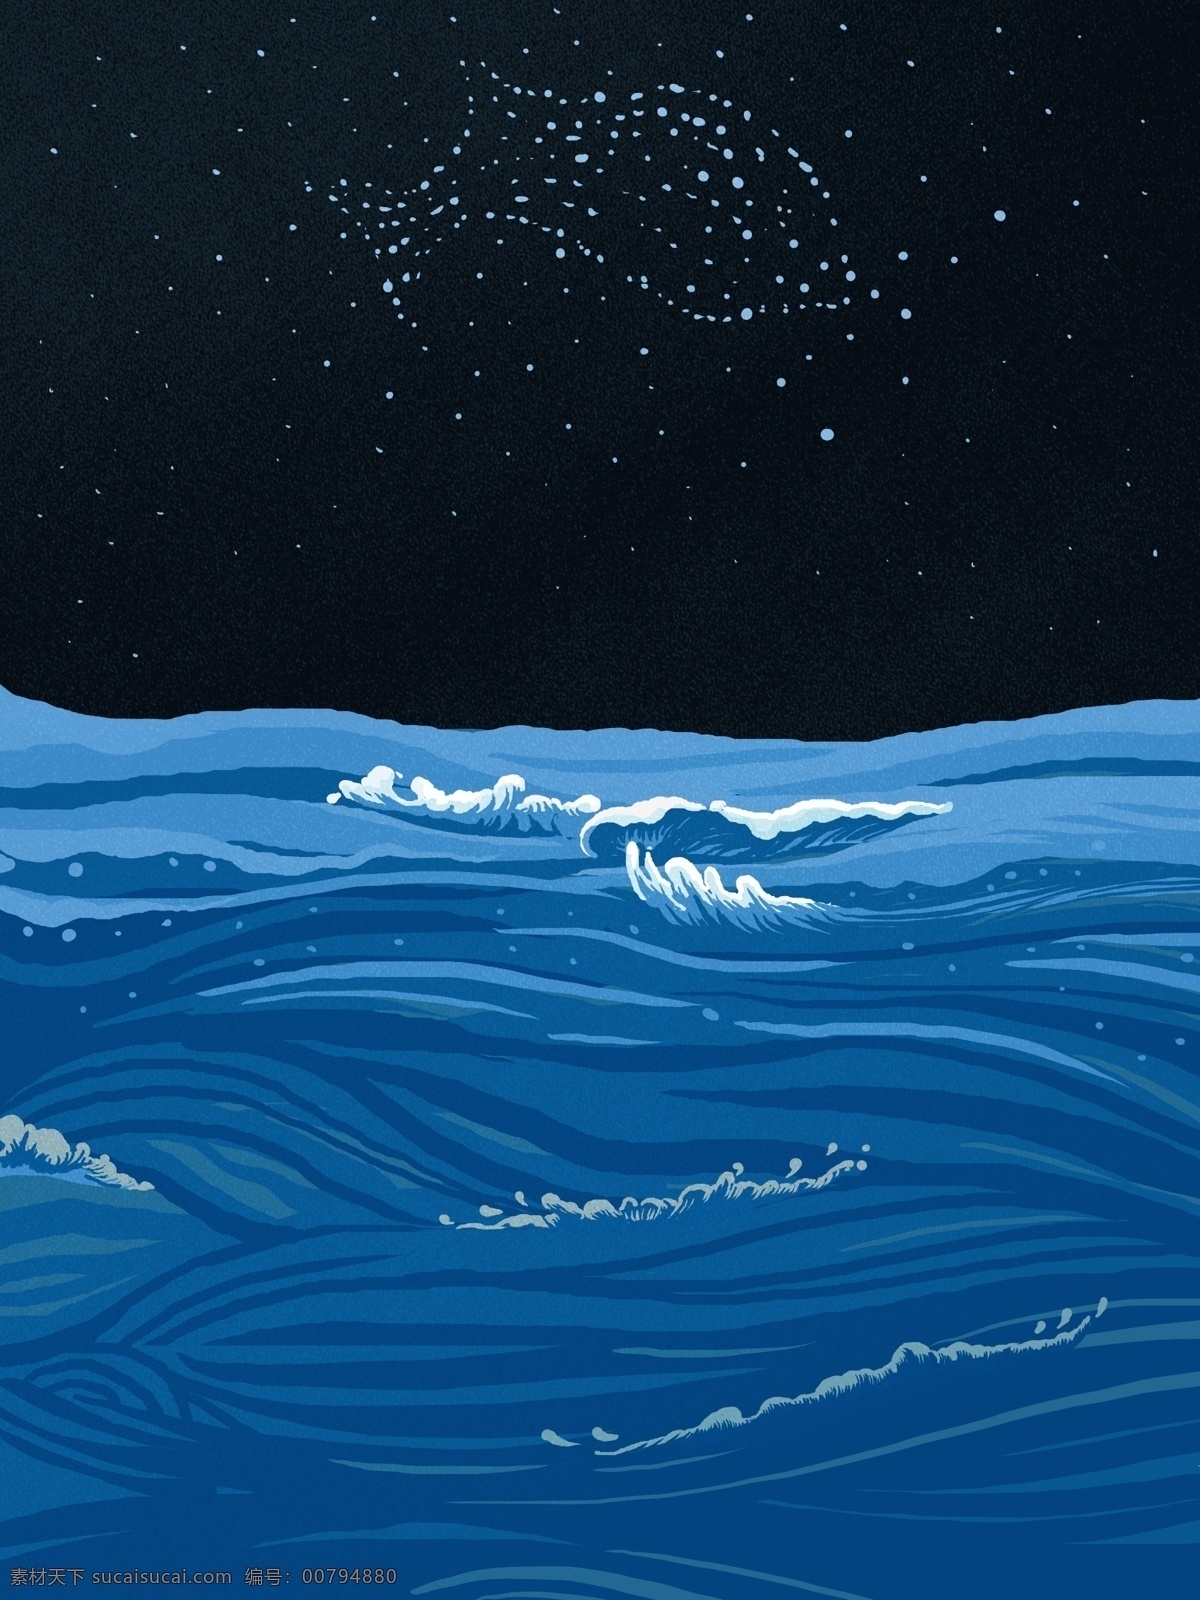 彩绘 大海 双鱼 星座 背景 星空 双星座 蓝色 海洋 广告背景 手绘背景 促销背景 背景展板图 背景图